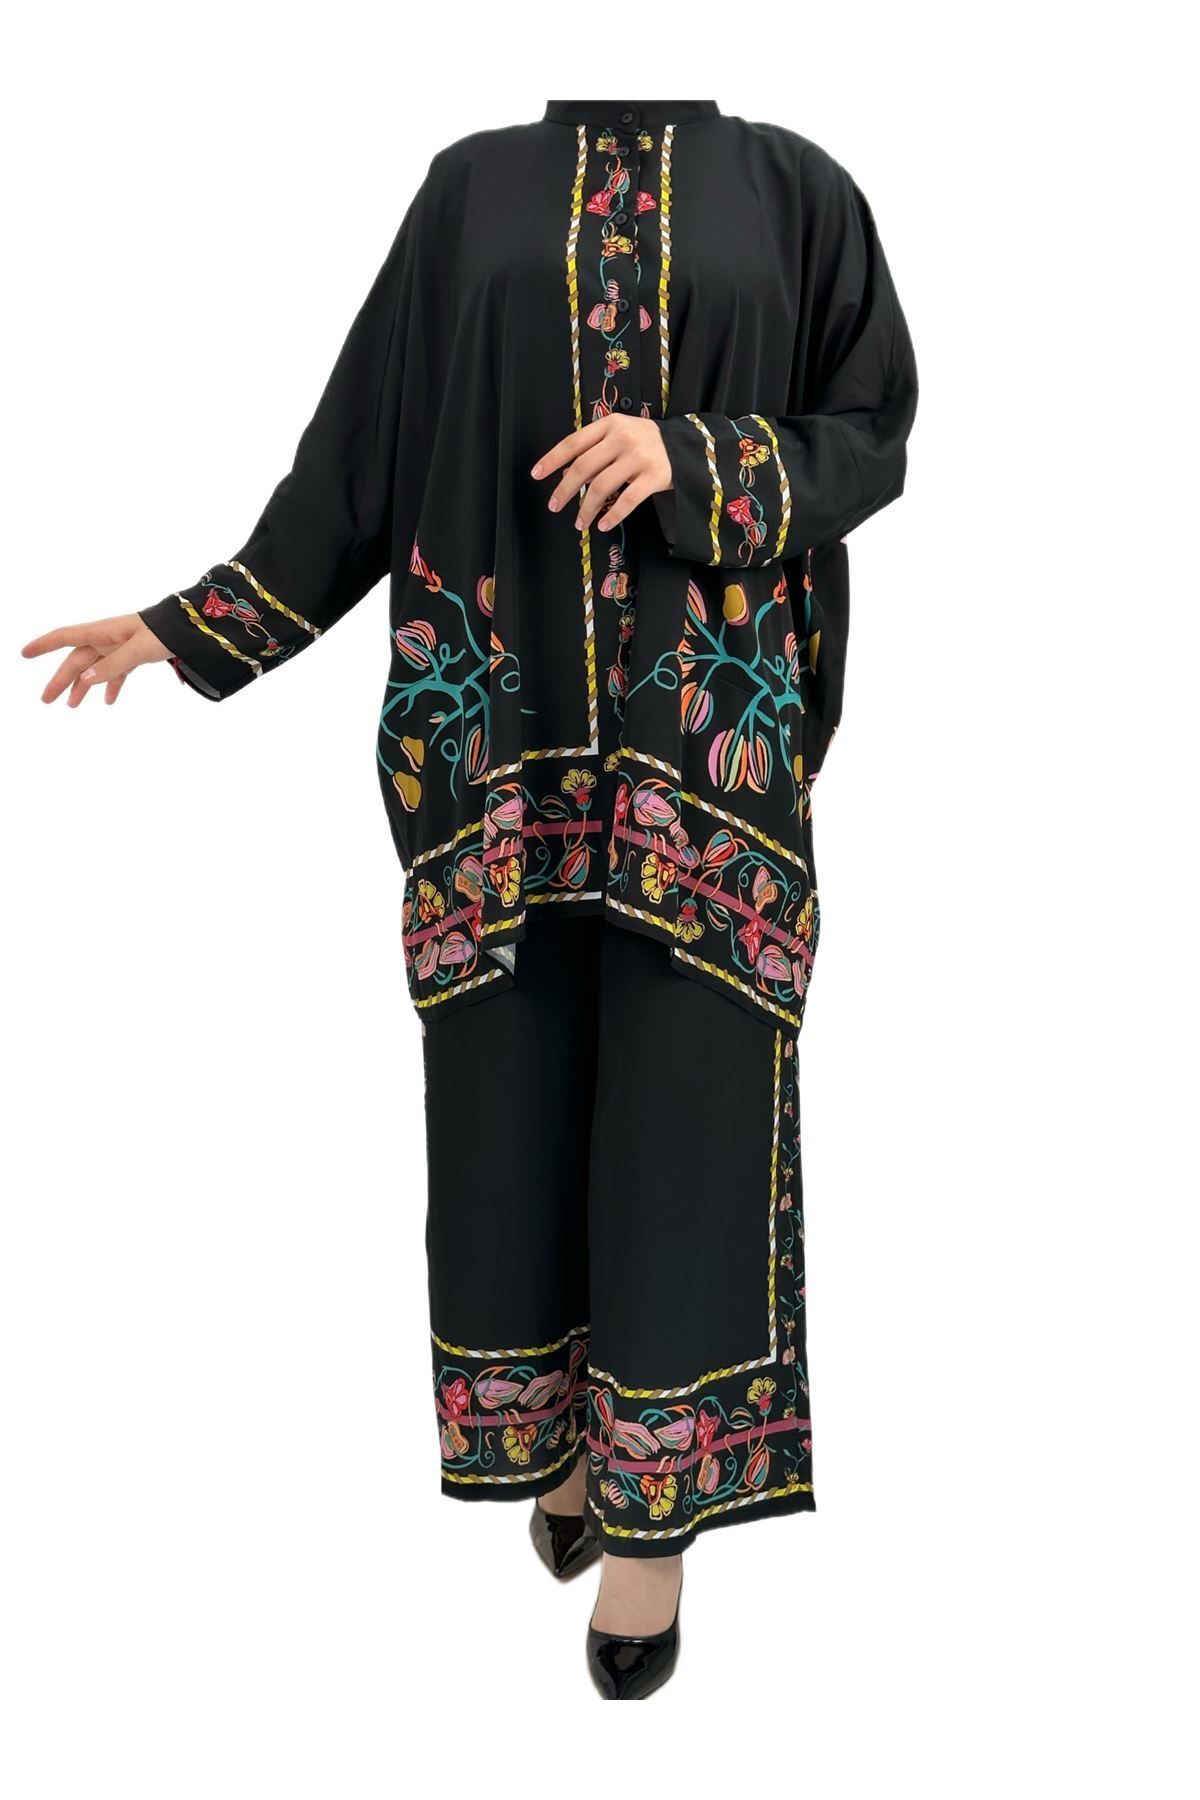 ottoman wear OTW40960 Büyük Beden Pantolonlu Takım Siyah